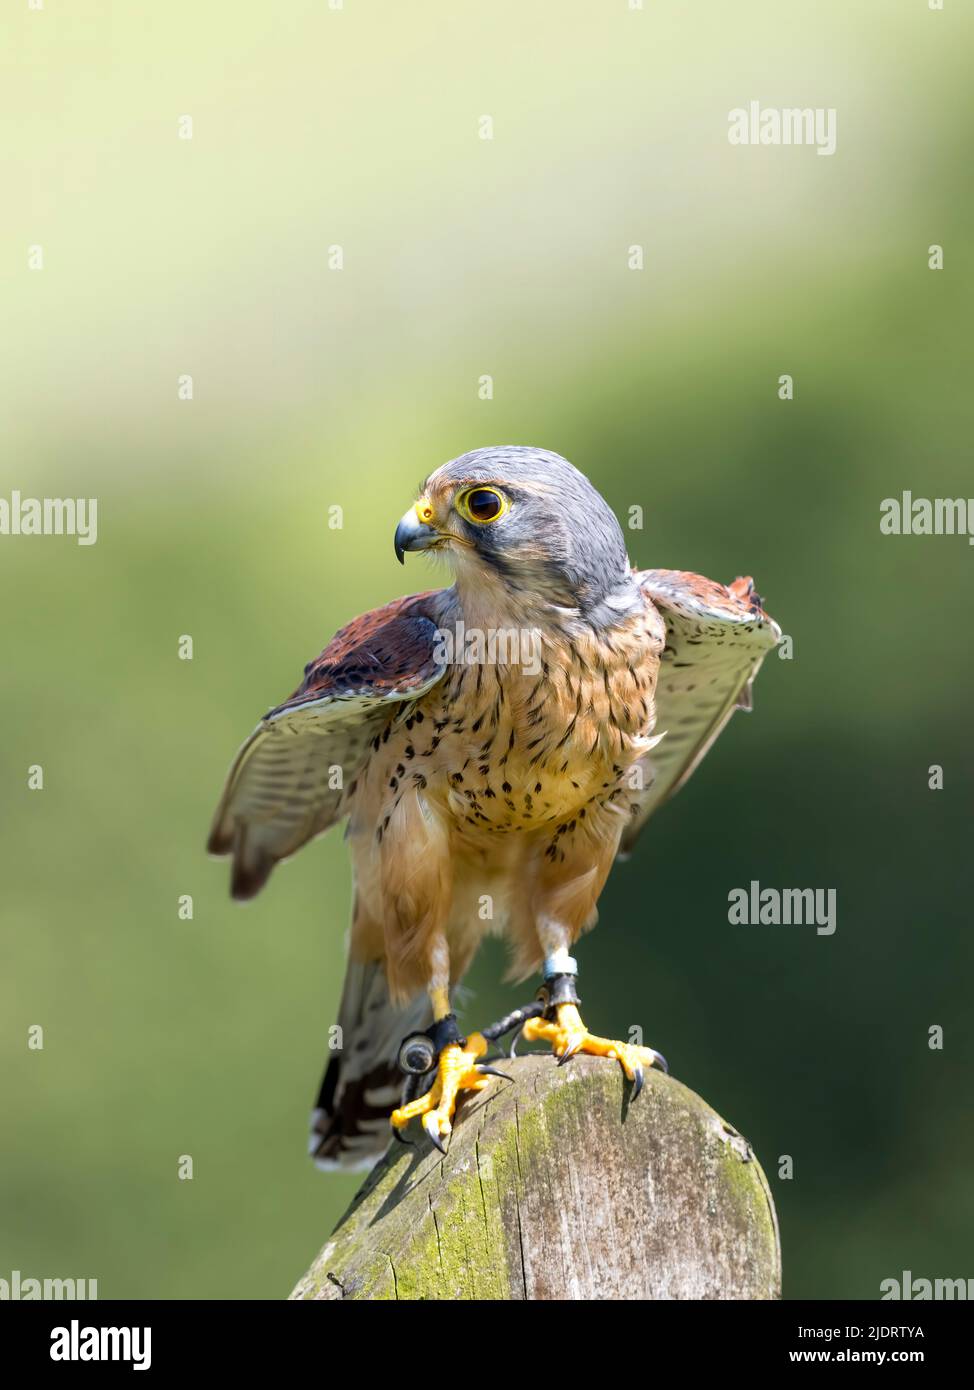 Eine Nahaufnahme eines schönen, gefangenen männlichen Kestrels (Falco tinnunculus), der seine Flügel ausbreitet. Die Füsse sind an den Beinen sichtbar Stockfoto